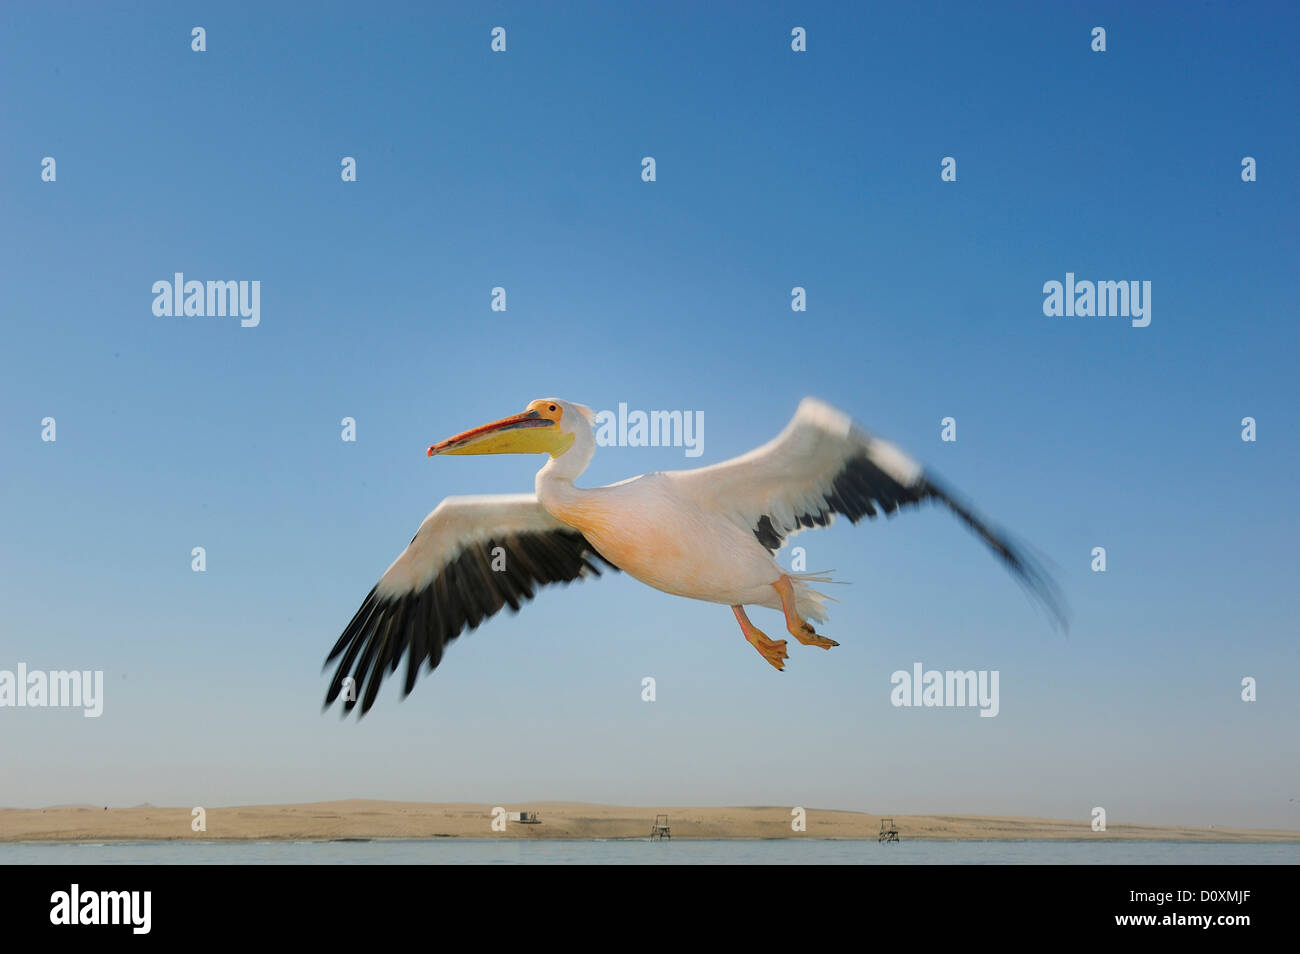 L'Afrique, la Namibie, Walvis Bay, Pelican, oiseau, voler Banque D'Images